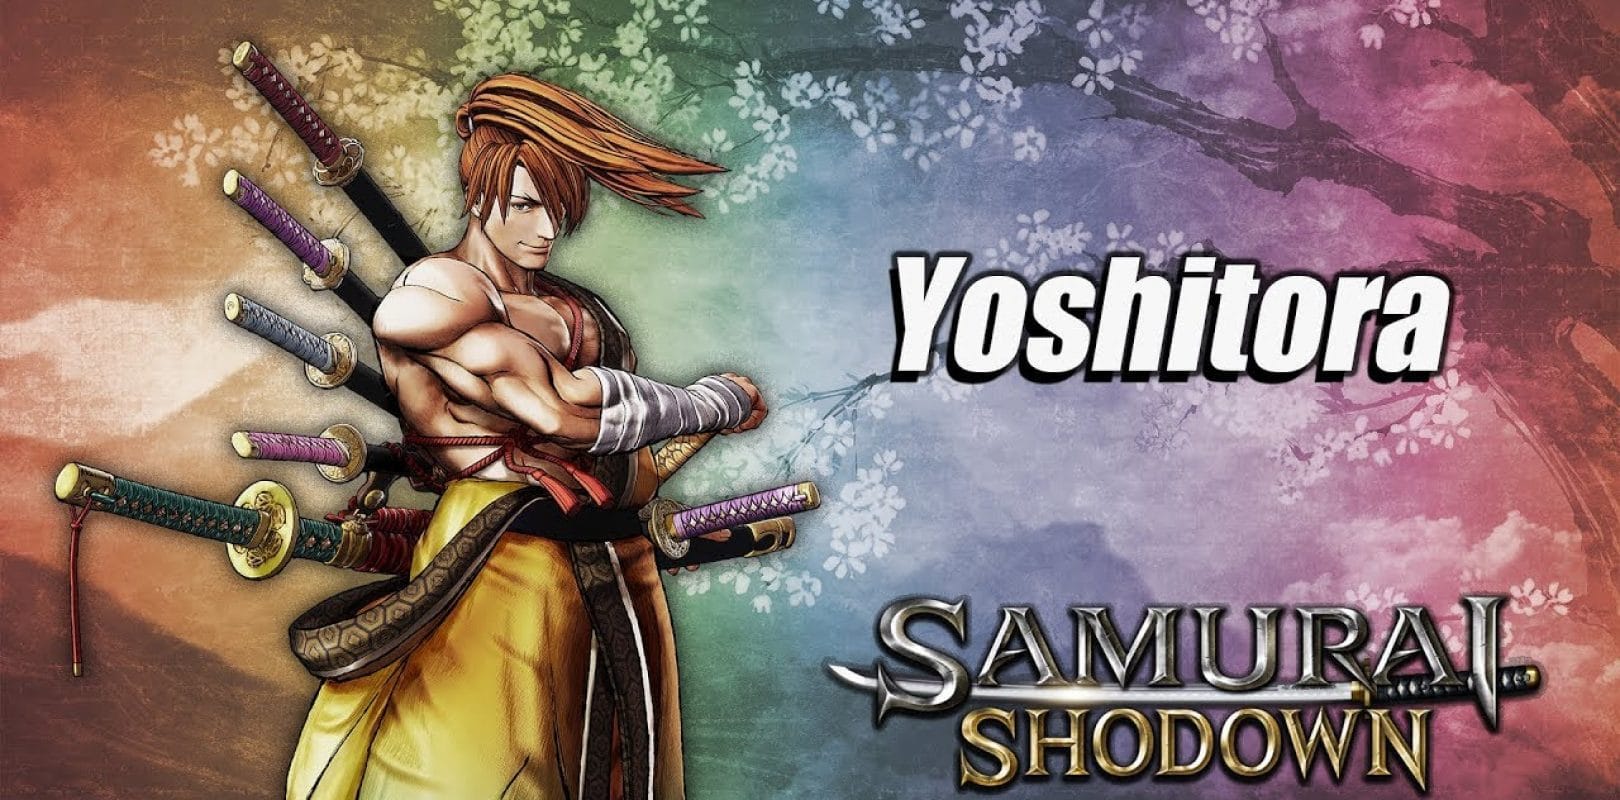 Il nuovo personaggio Samurai Shodown, ecco il traile del nuovo personaggio Yoshitora di Samurai Showdown